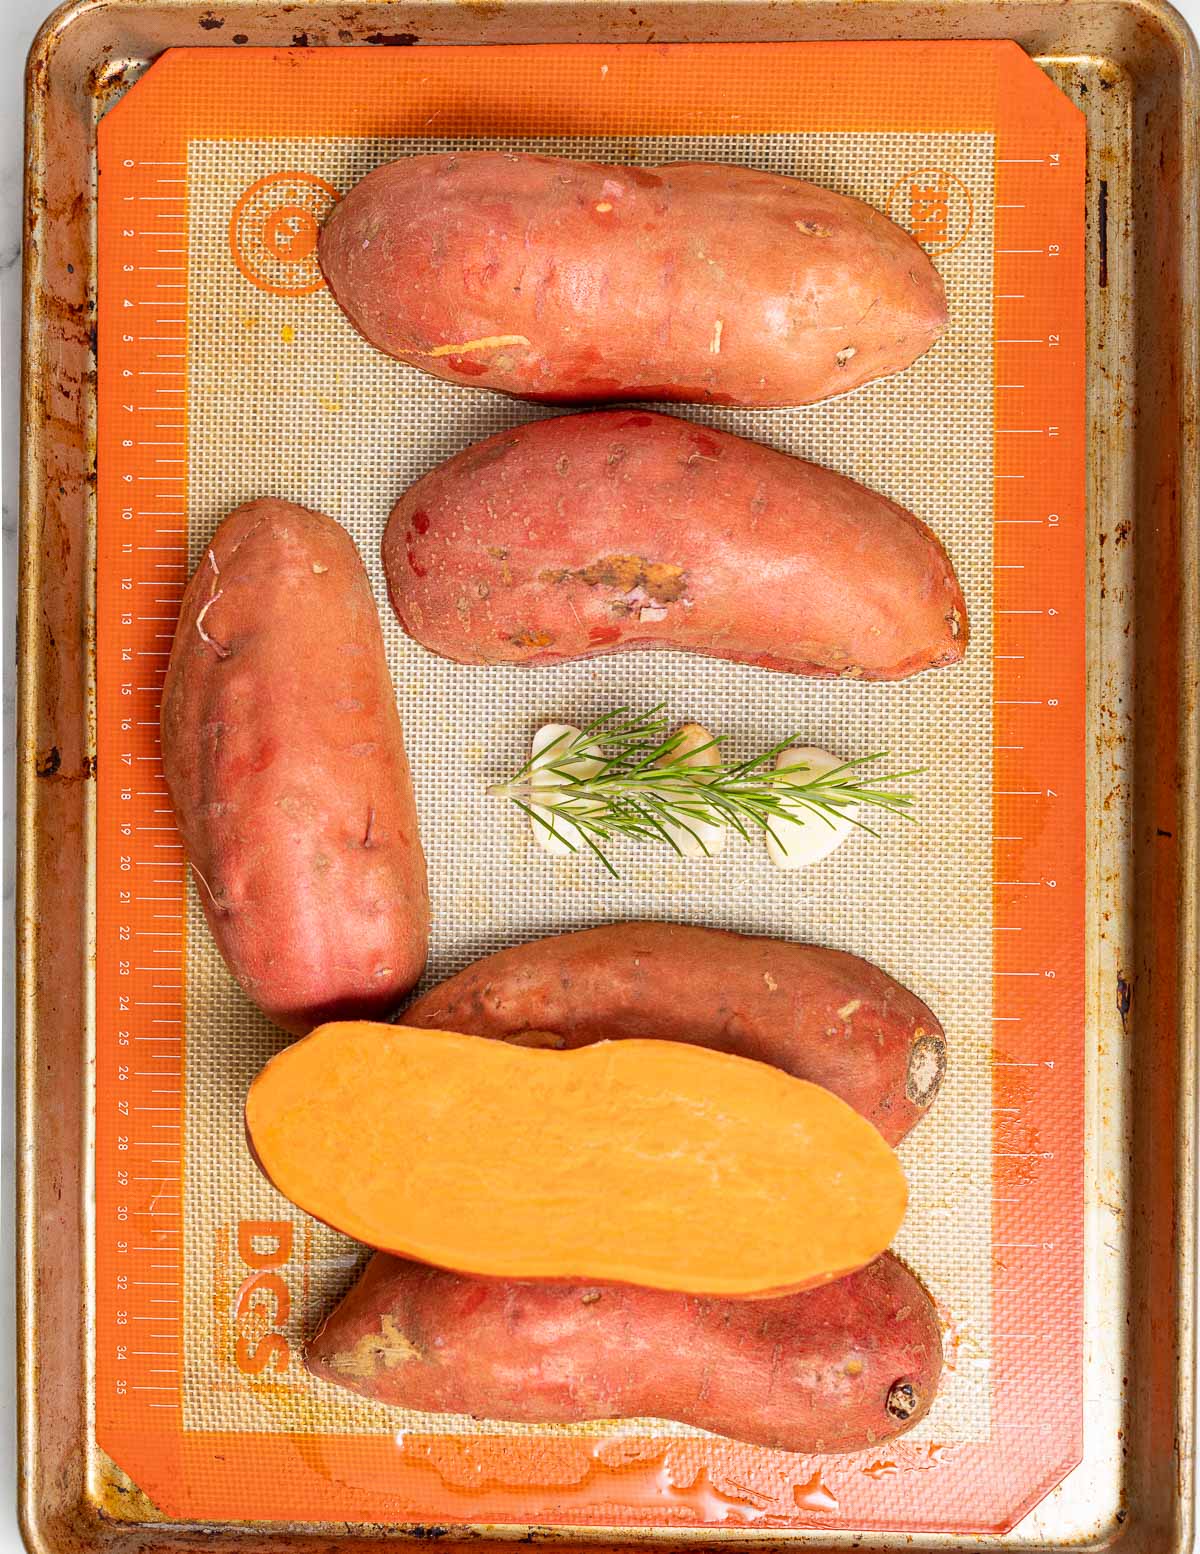 halfed sweet potatoe son a tray with rosemary and garlic